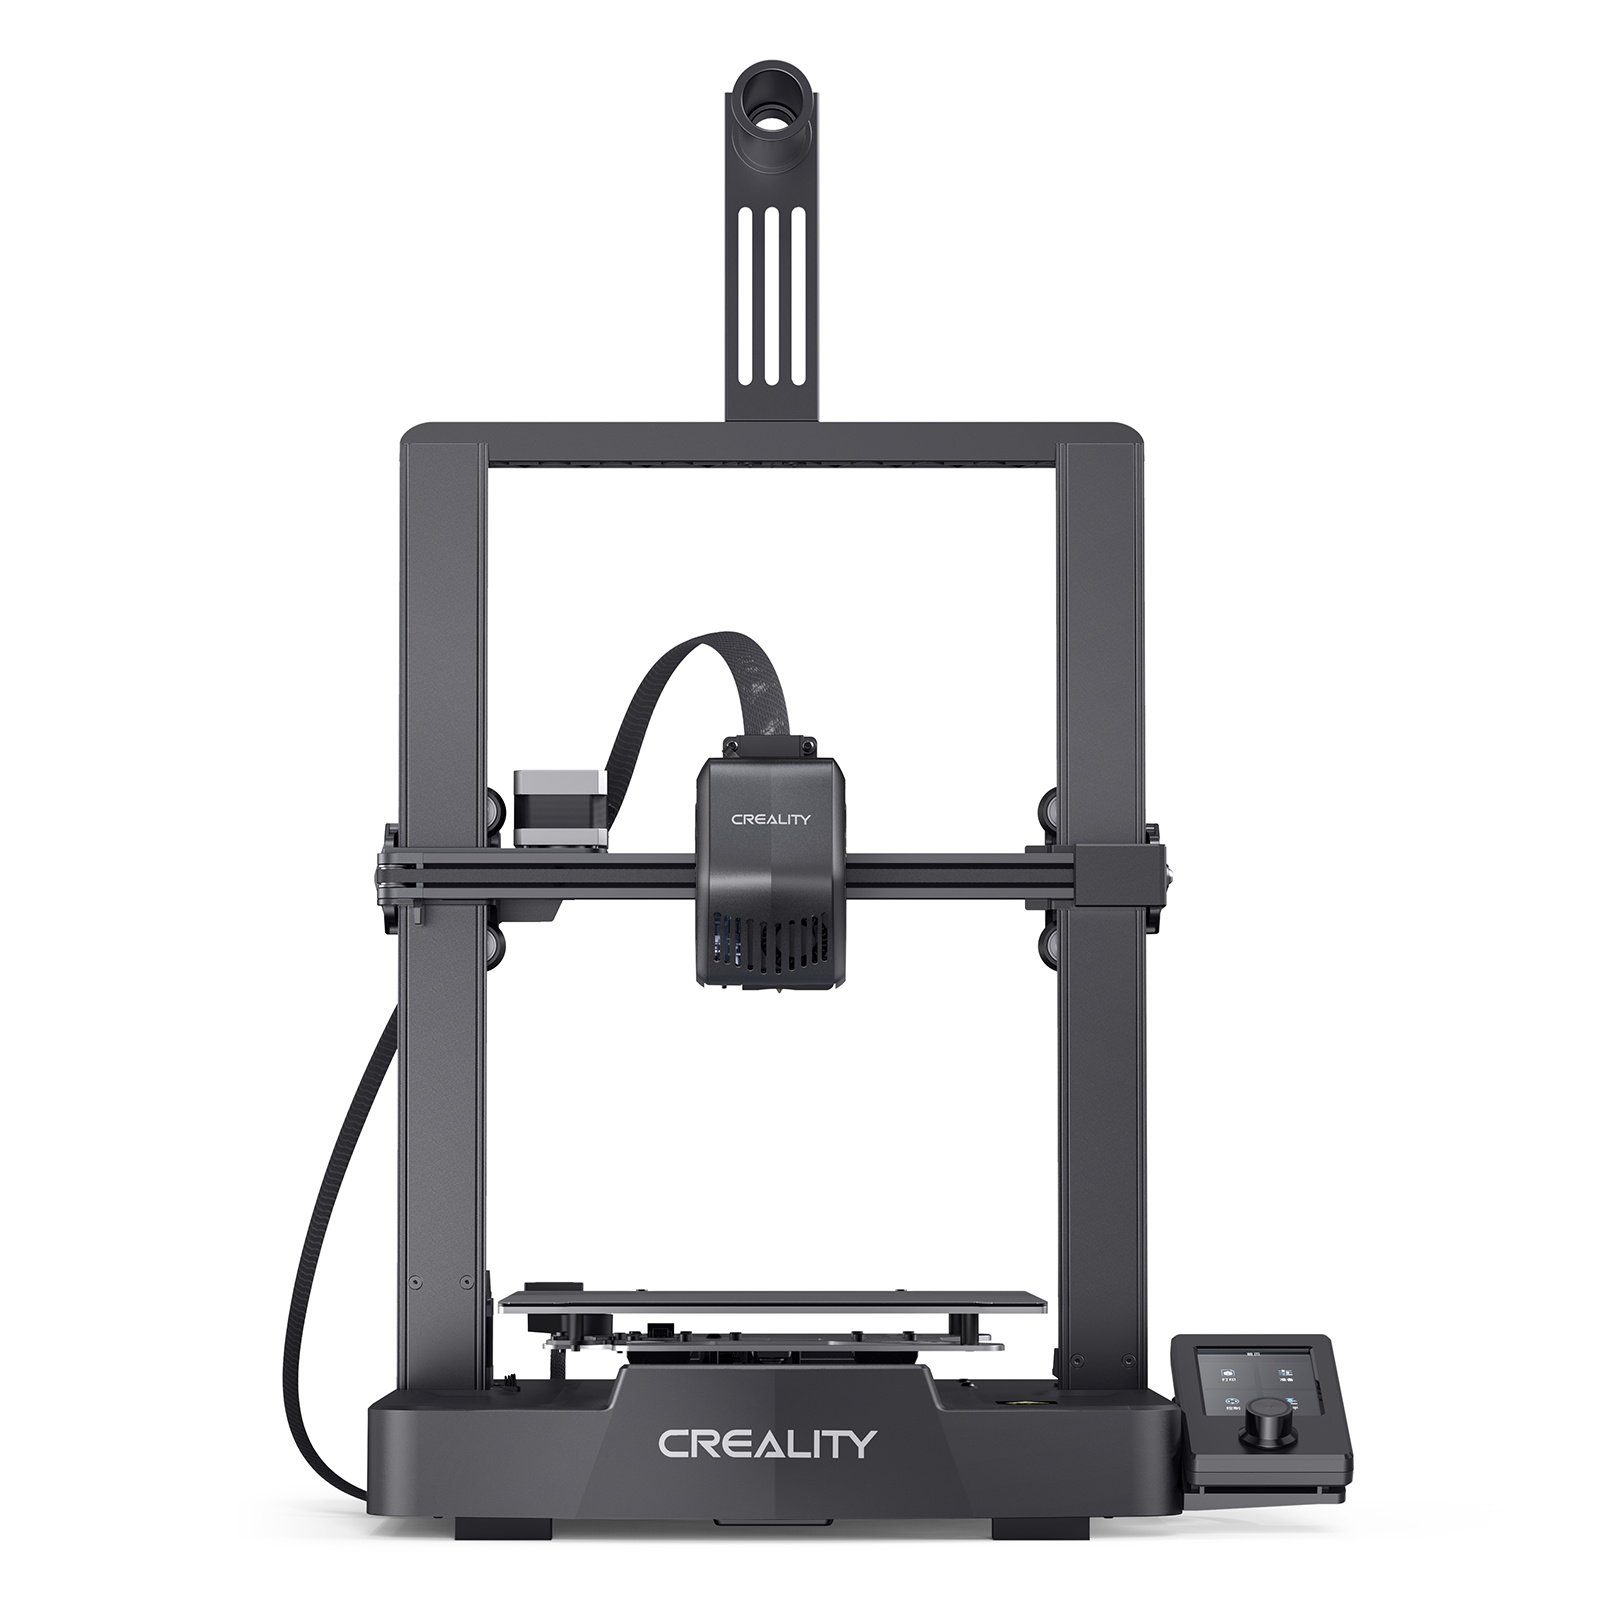 Creality 3D-Drucker Ender-3 V3 SE, CR Touch, Automatischer Nivellierung, 220 x 220 x 250 mm Druckgröße